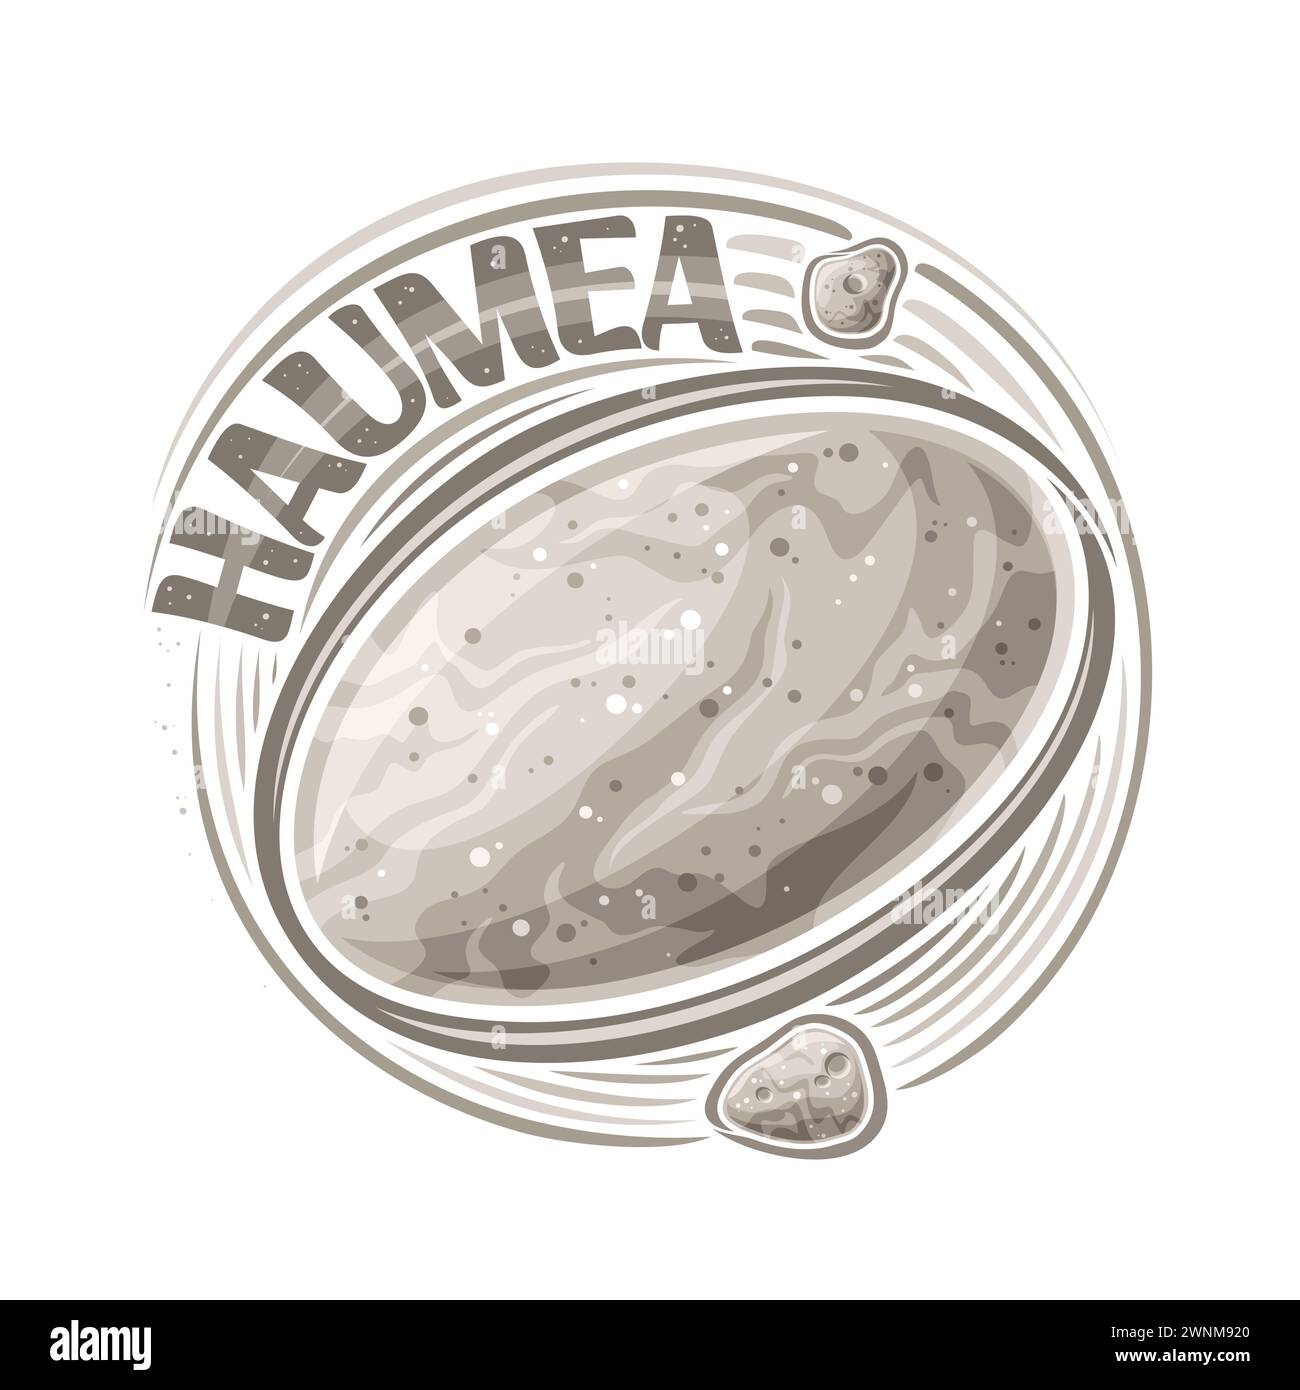 Vektor-Logo für Zwergplaneten Haumea, dekorativer Kosmo-Druck mit rotierenden Monden Hi'iaka und Namaka um den ovalen Planeten, quadratisches Raumposter mit Unikat Stock Vektor